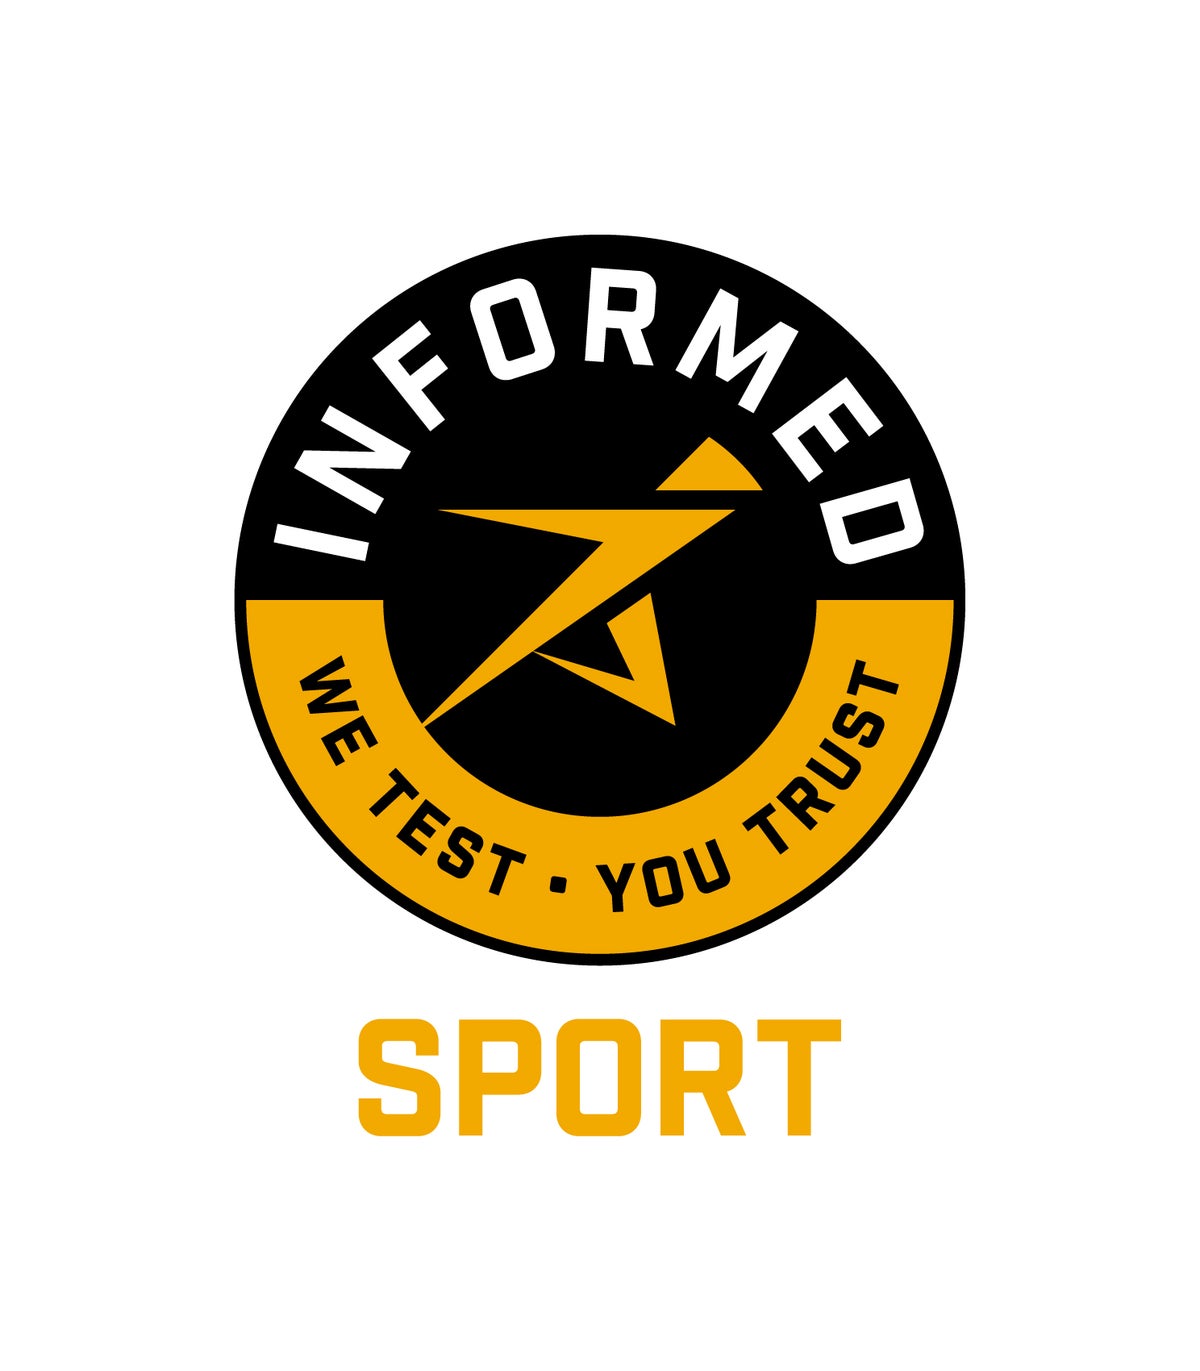 Informed Sport, we test, you trust